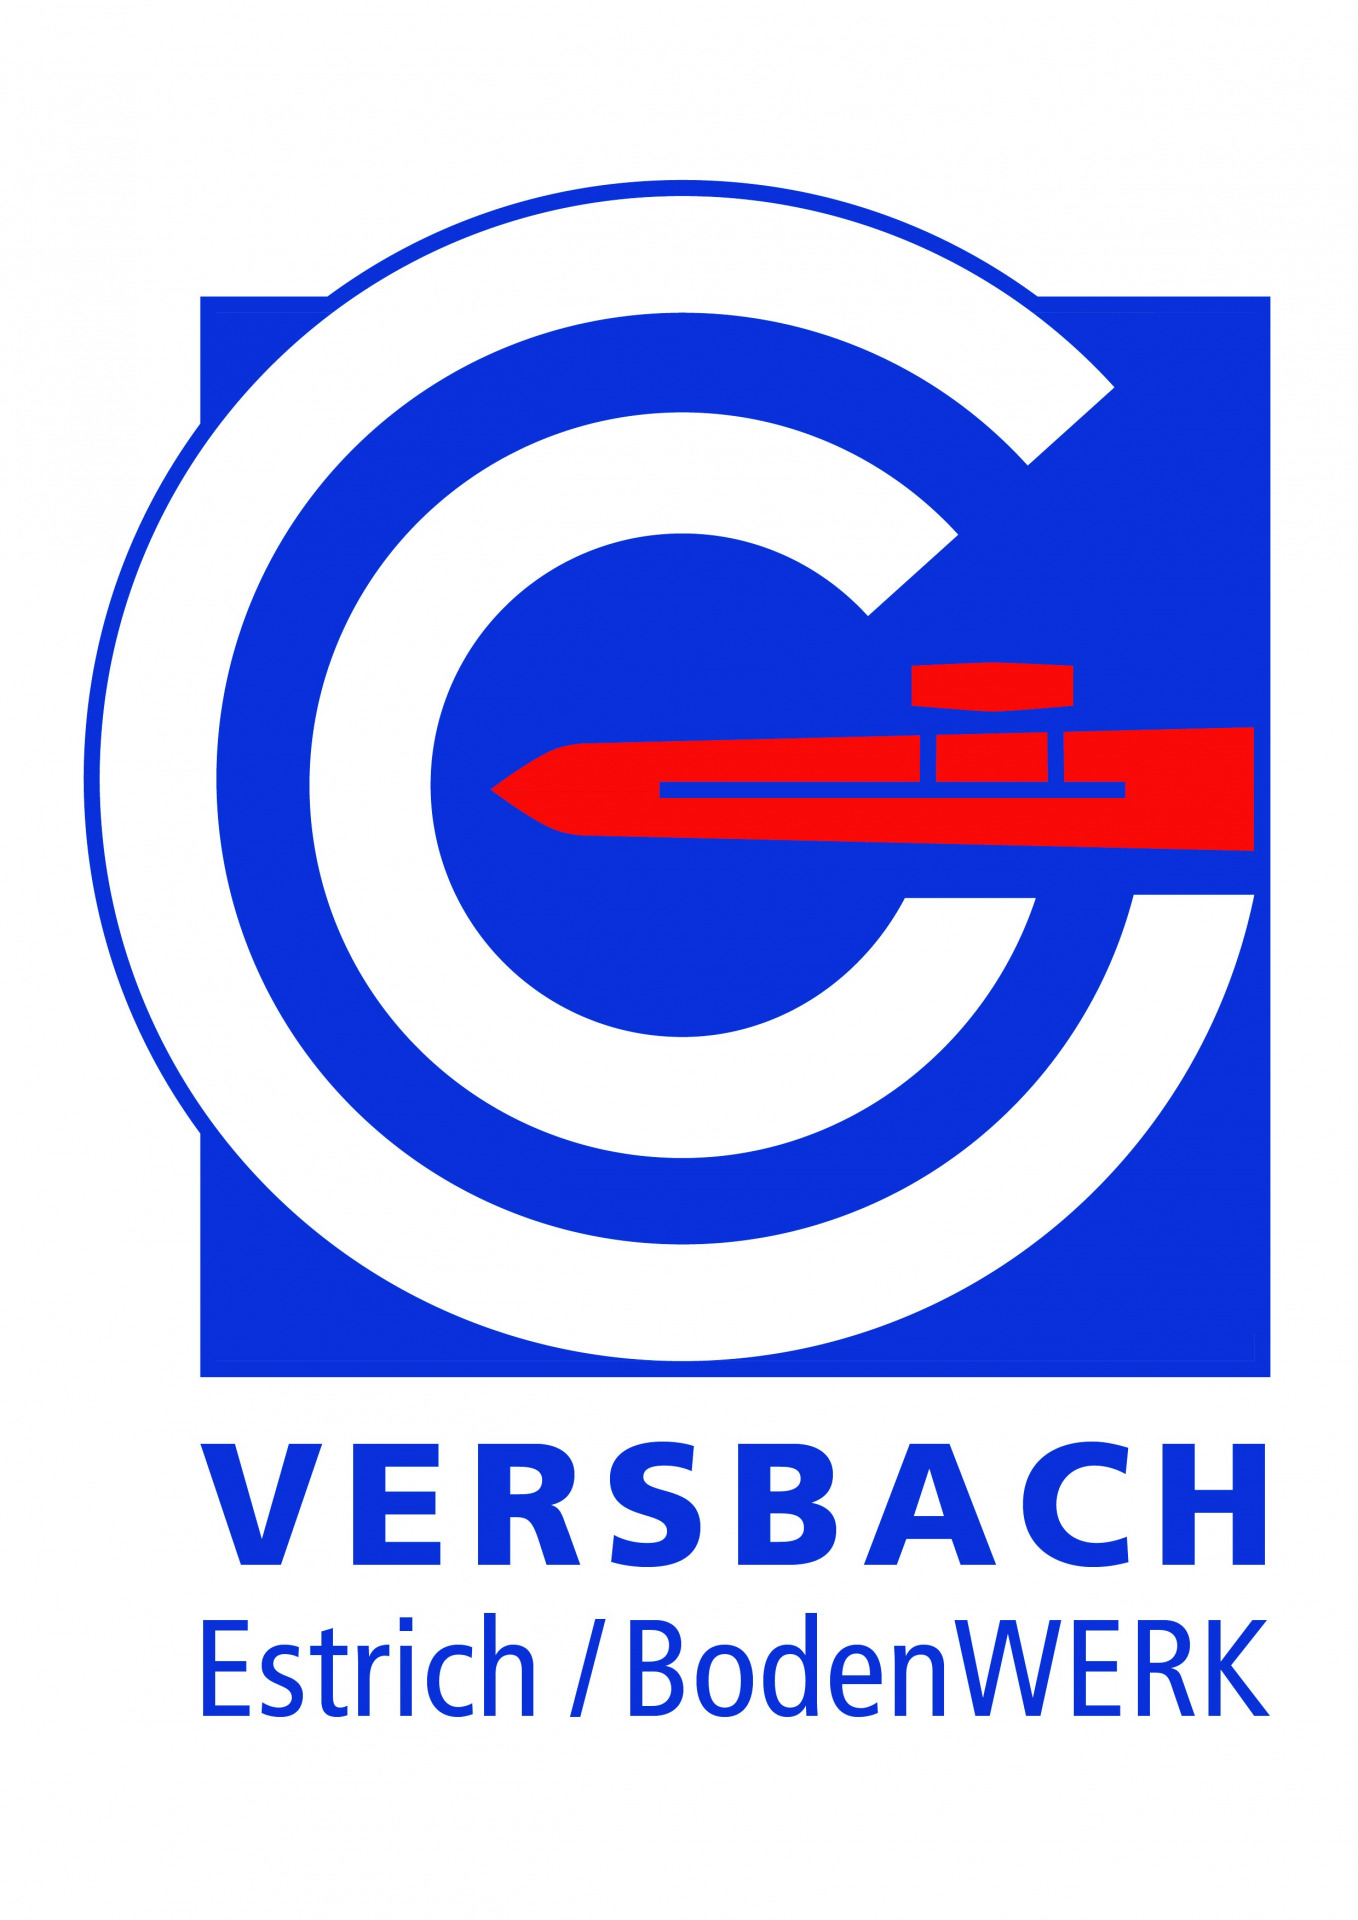 Versbach_Estrich BodenWERK GmbH